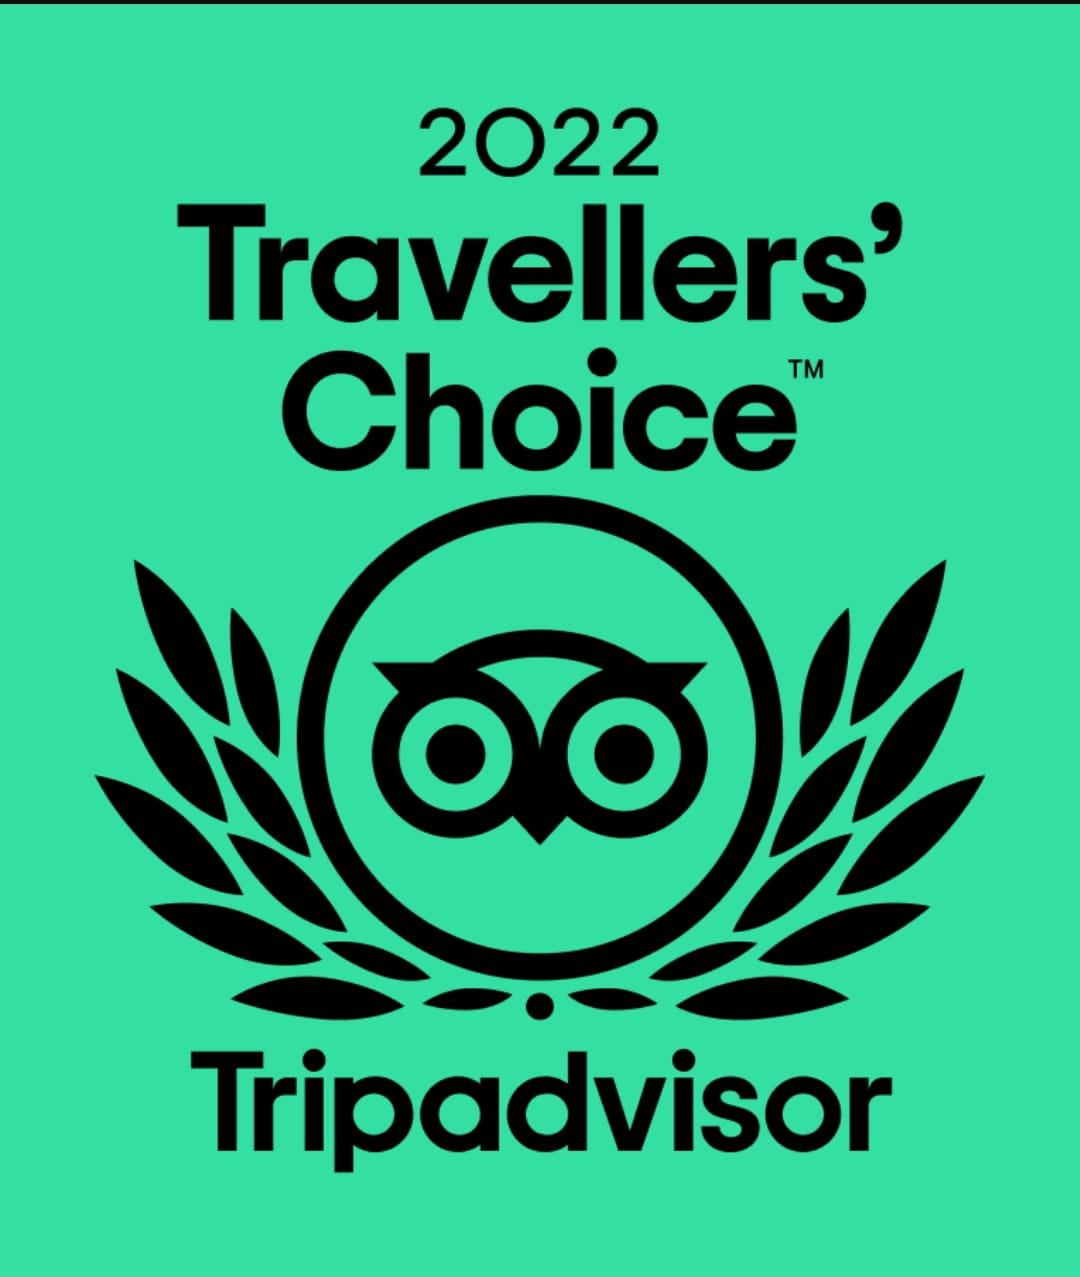 Tripadvisor certificate for 2022